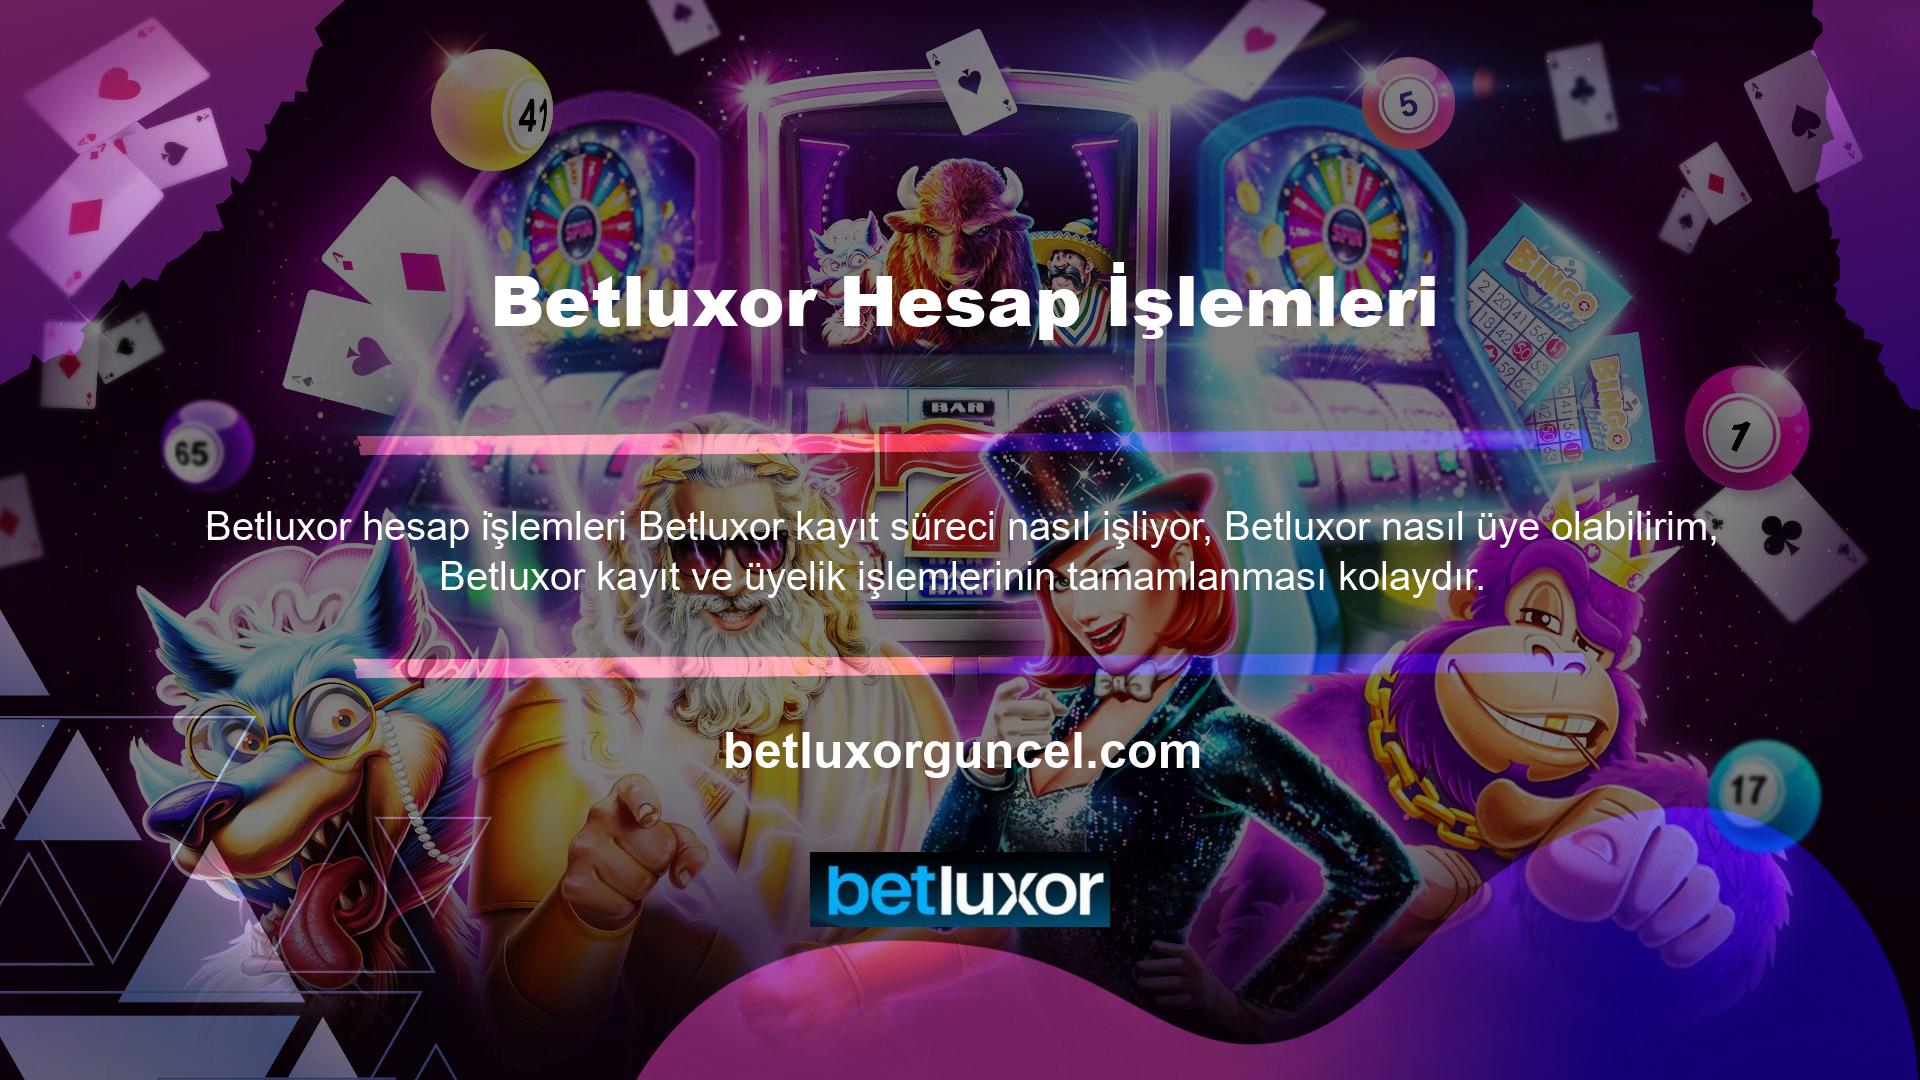 Bu yazımızda üye olmanızı önerdiğimiz birkaç güvenilir platformdan biri olan Betluxor nasıl üye olacağınızı göstereceğiz